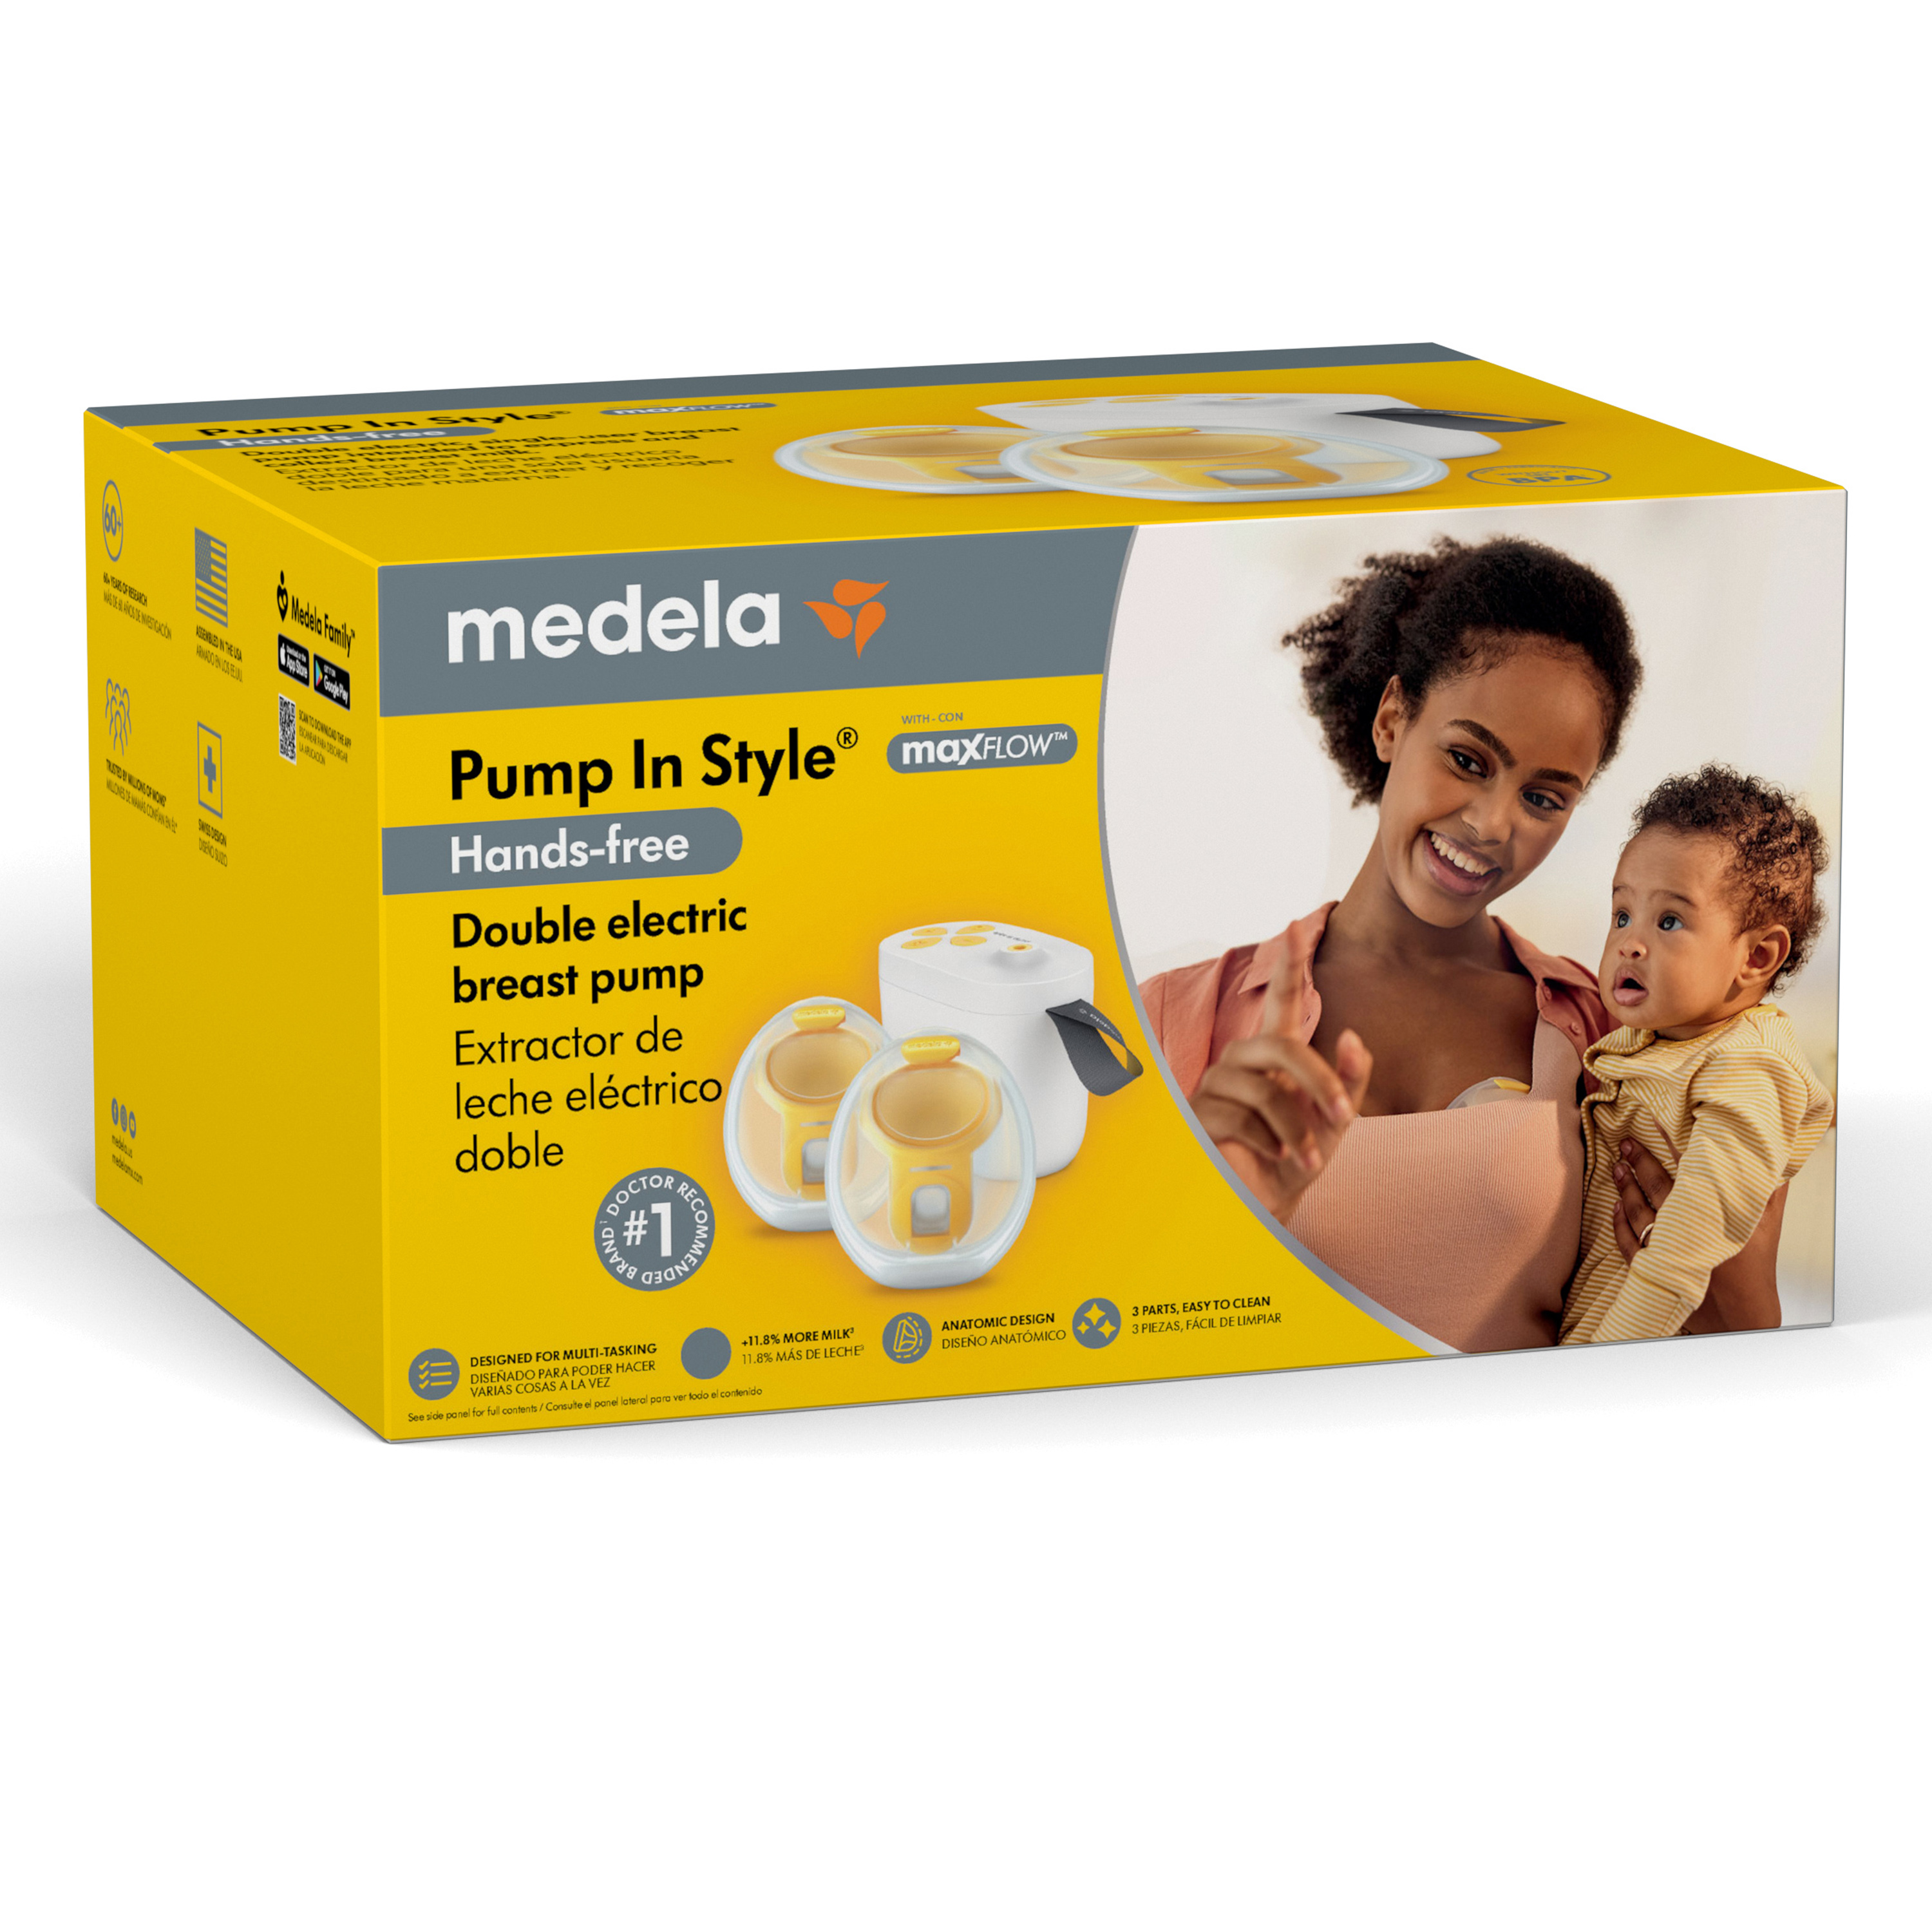 Medela Pump In Style Hands-Free Pump Breast Pump